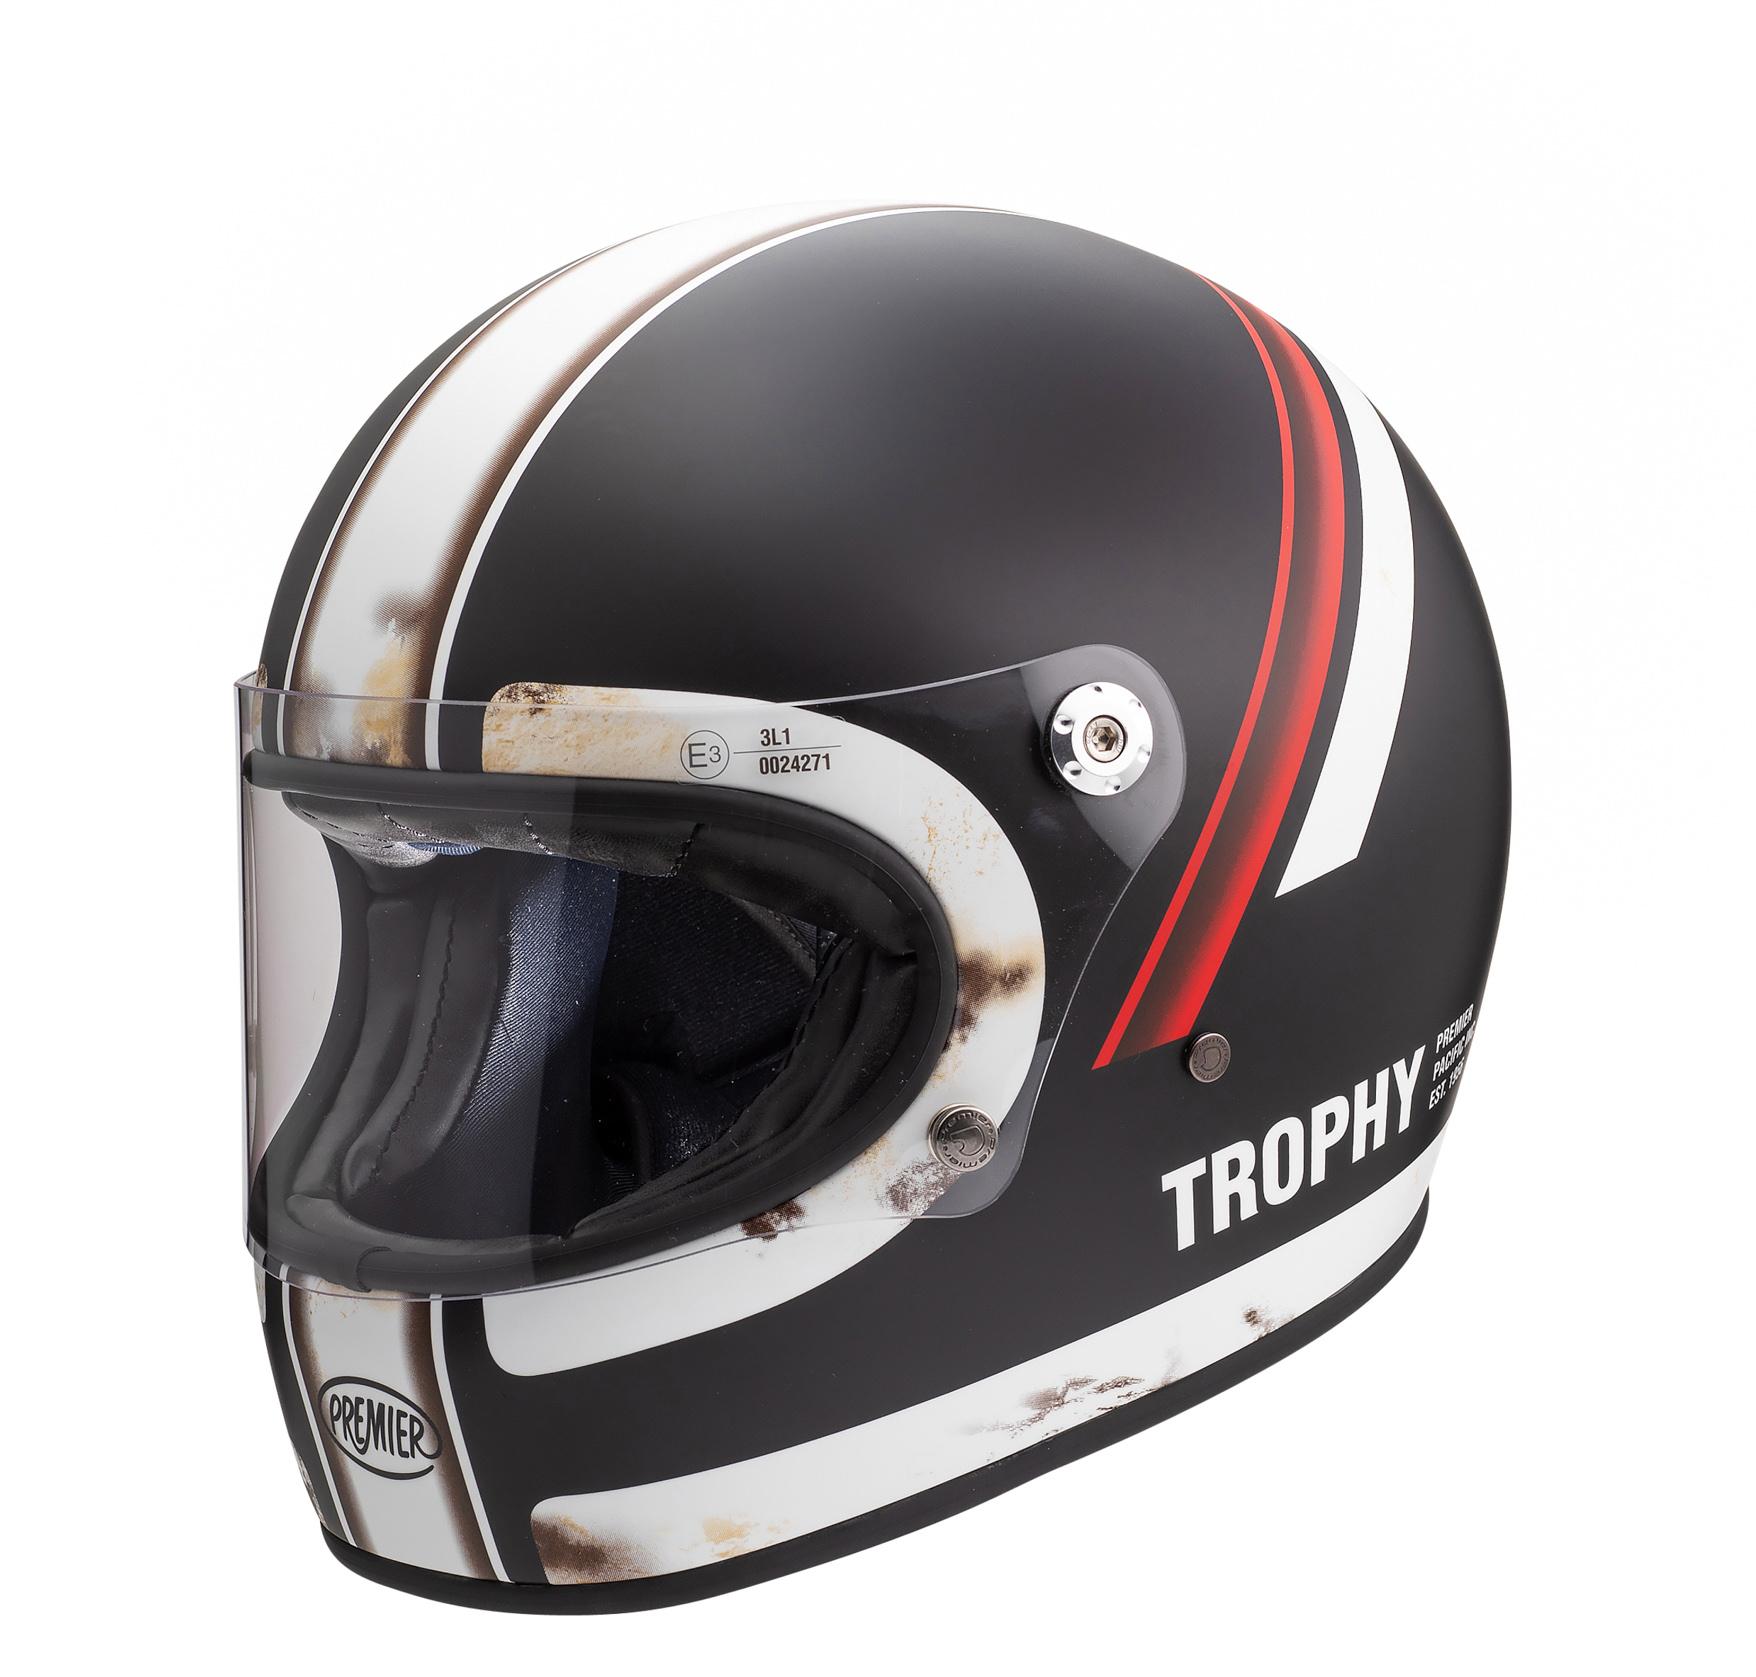 Premier Trophy Full Face Motorcycle Helmet Do - Black/White, M